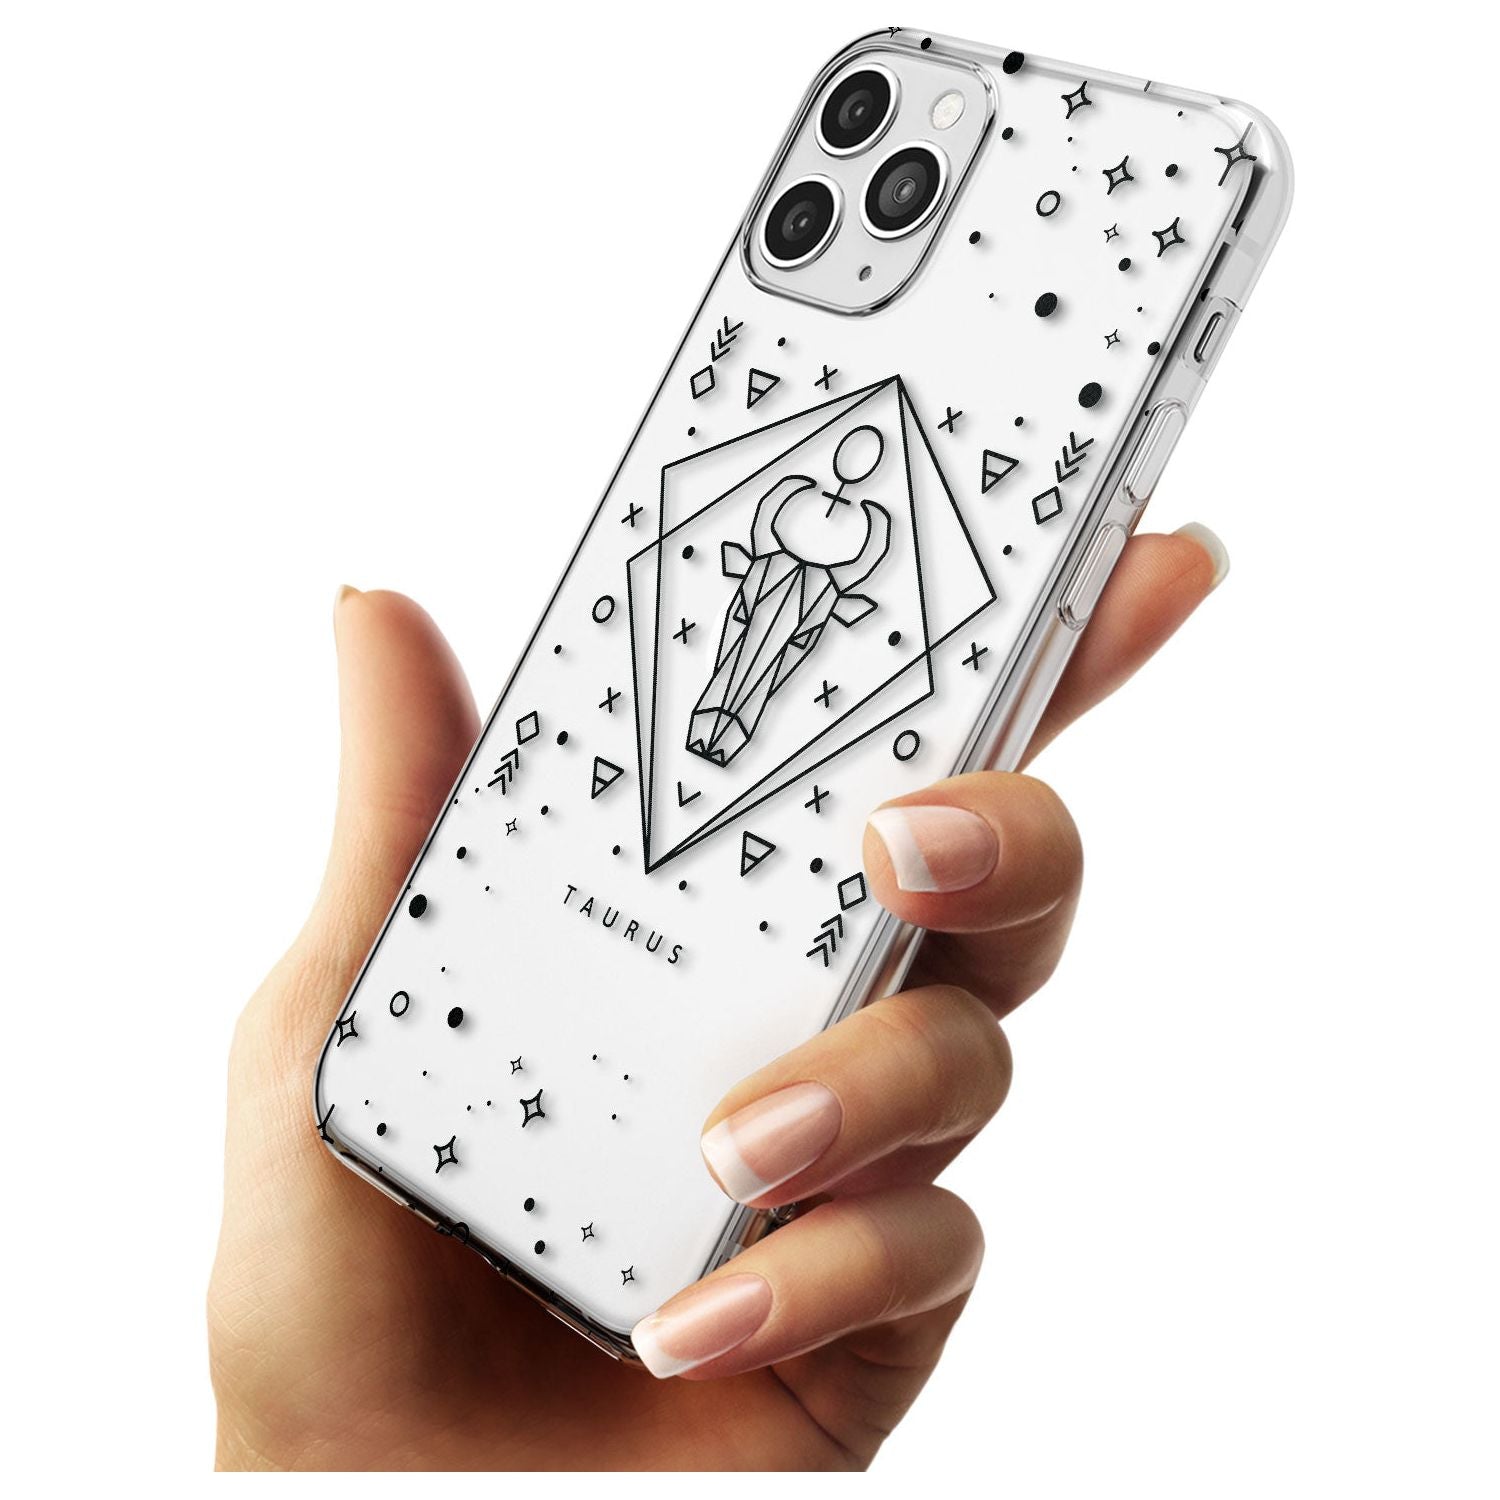 Taurus Emblem - Transparent Design Slim TPU Phone Case for iPhone 11 Pro Max